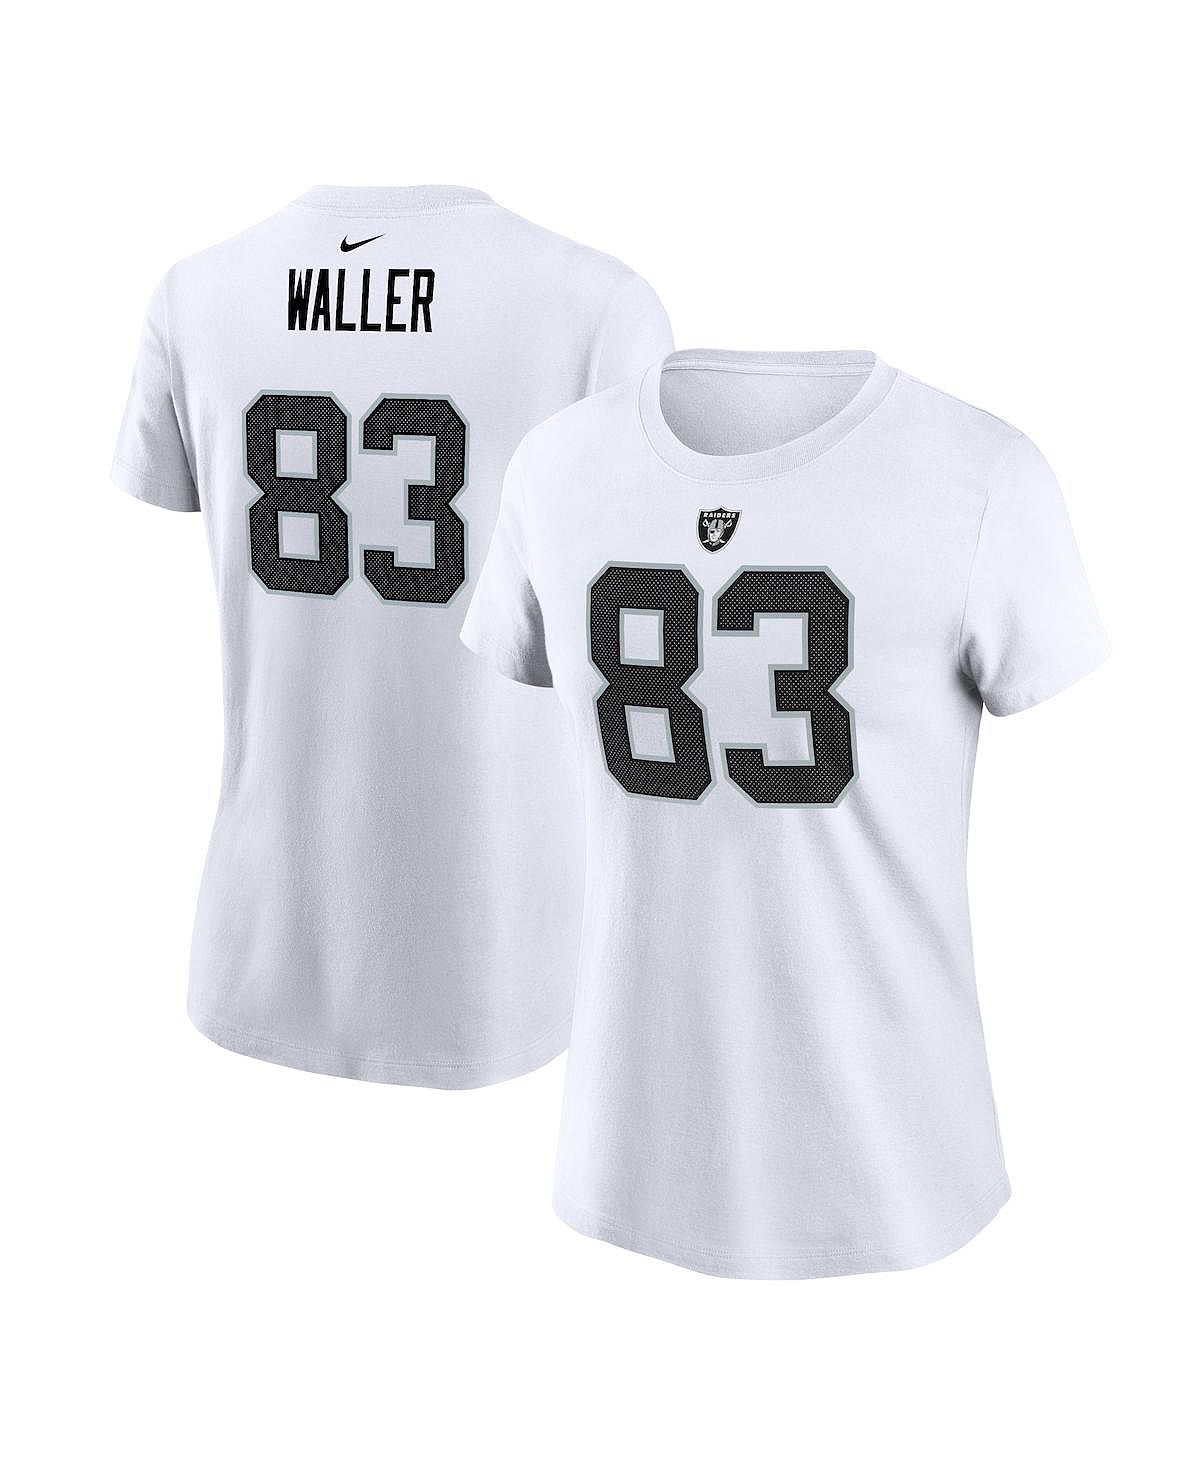 Женская белая футболка с именем и номером игрока Darren Waller Las Vegas Raiders Nike, белый